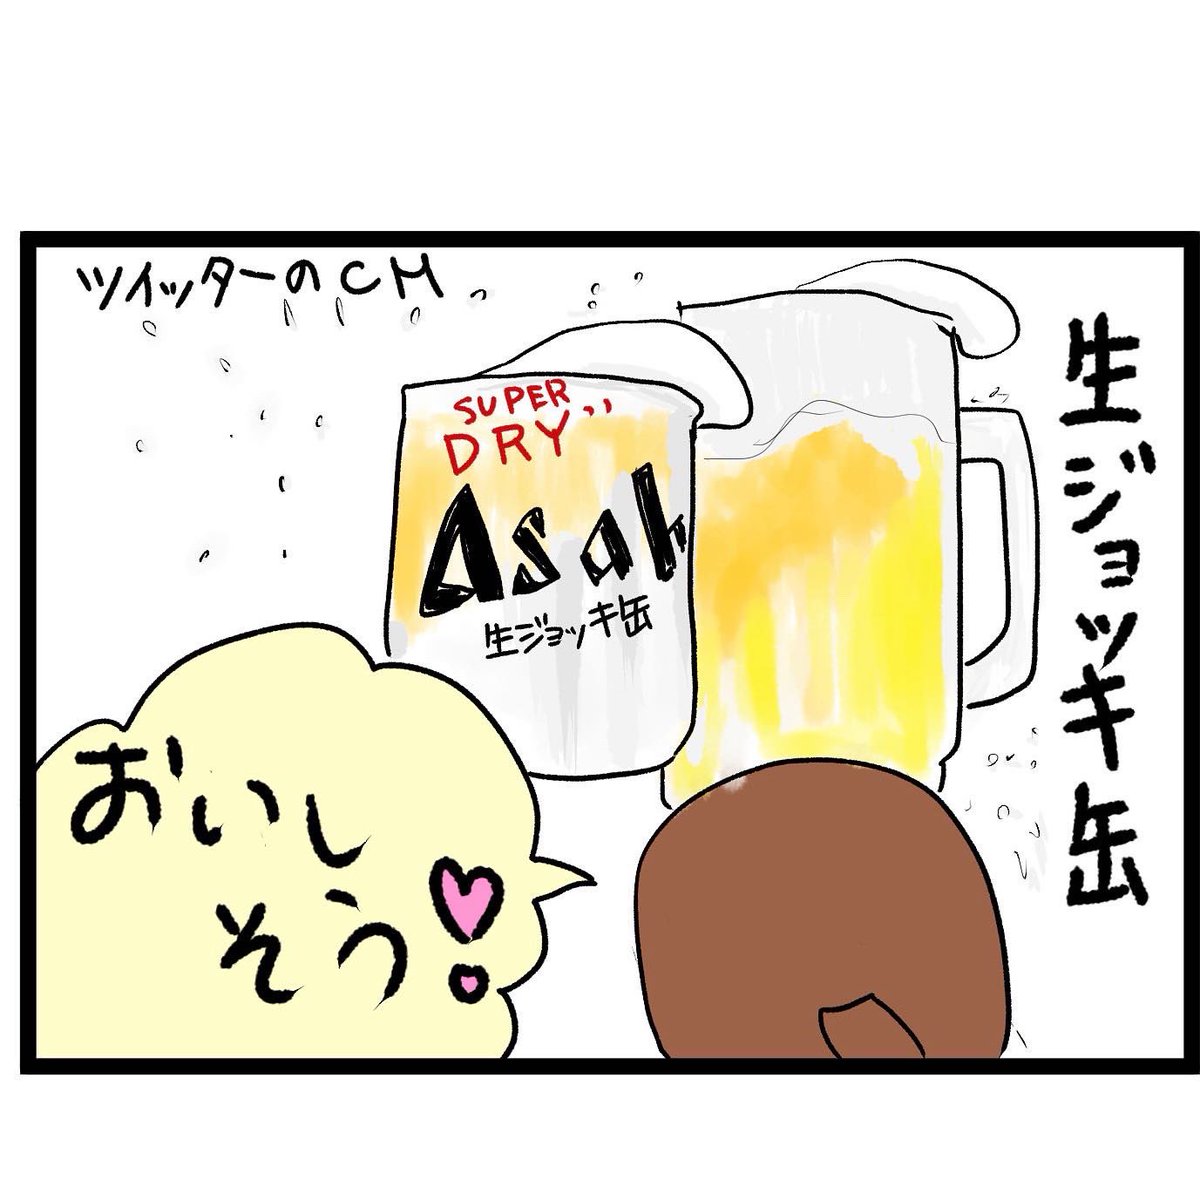 #四コマ漫画
#生ジョッキ缶
ビールはコレに決めたー!! 